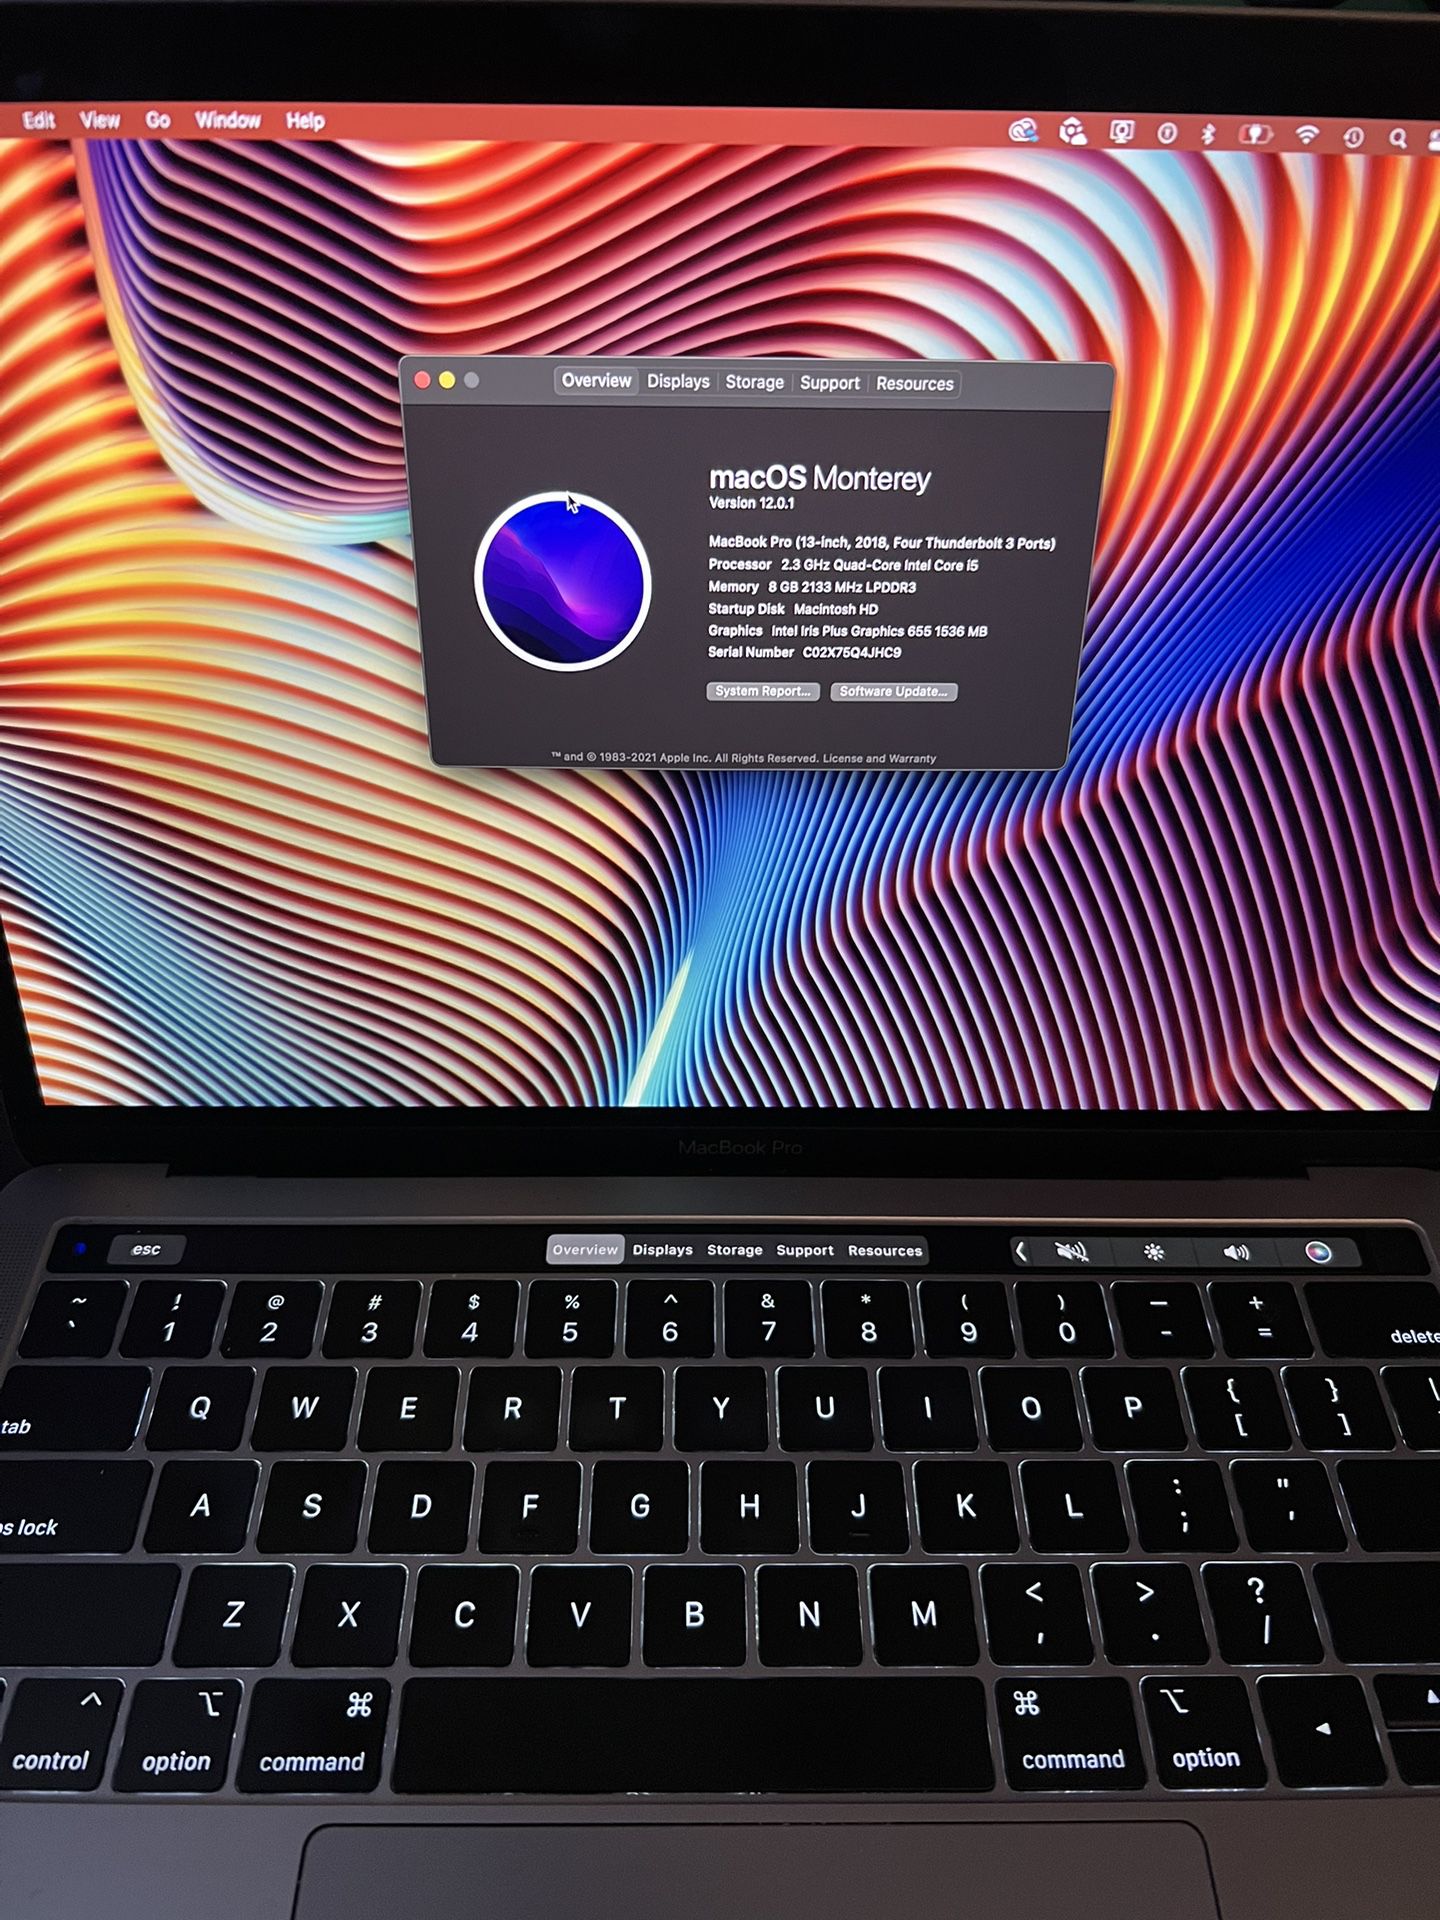 2018 MacBook Pro 13 Inch